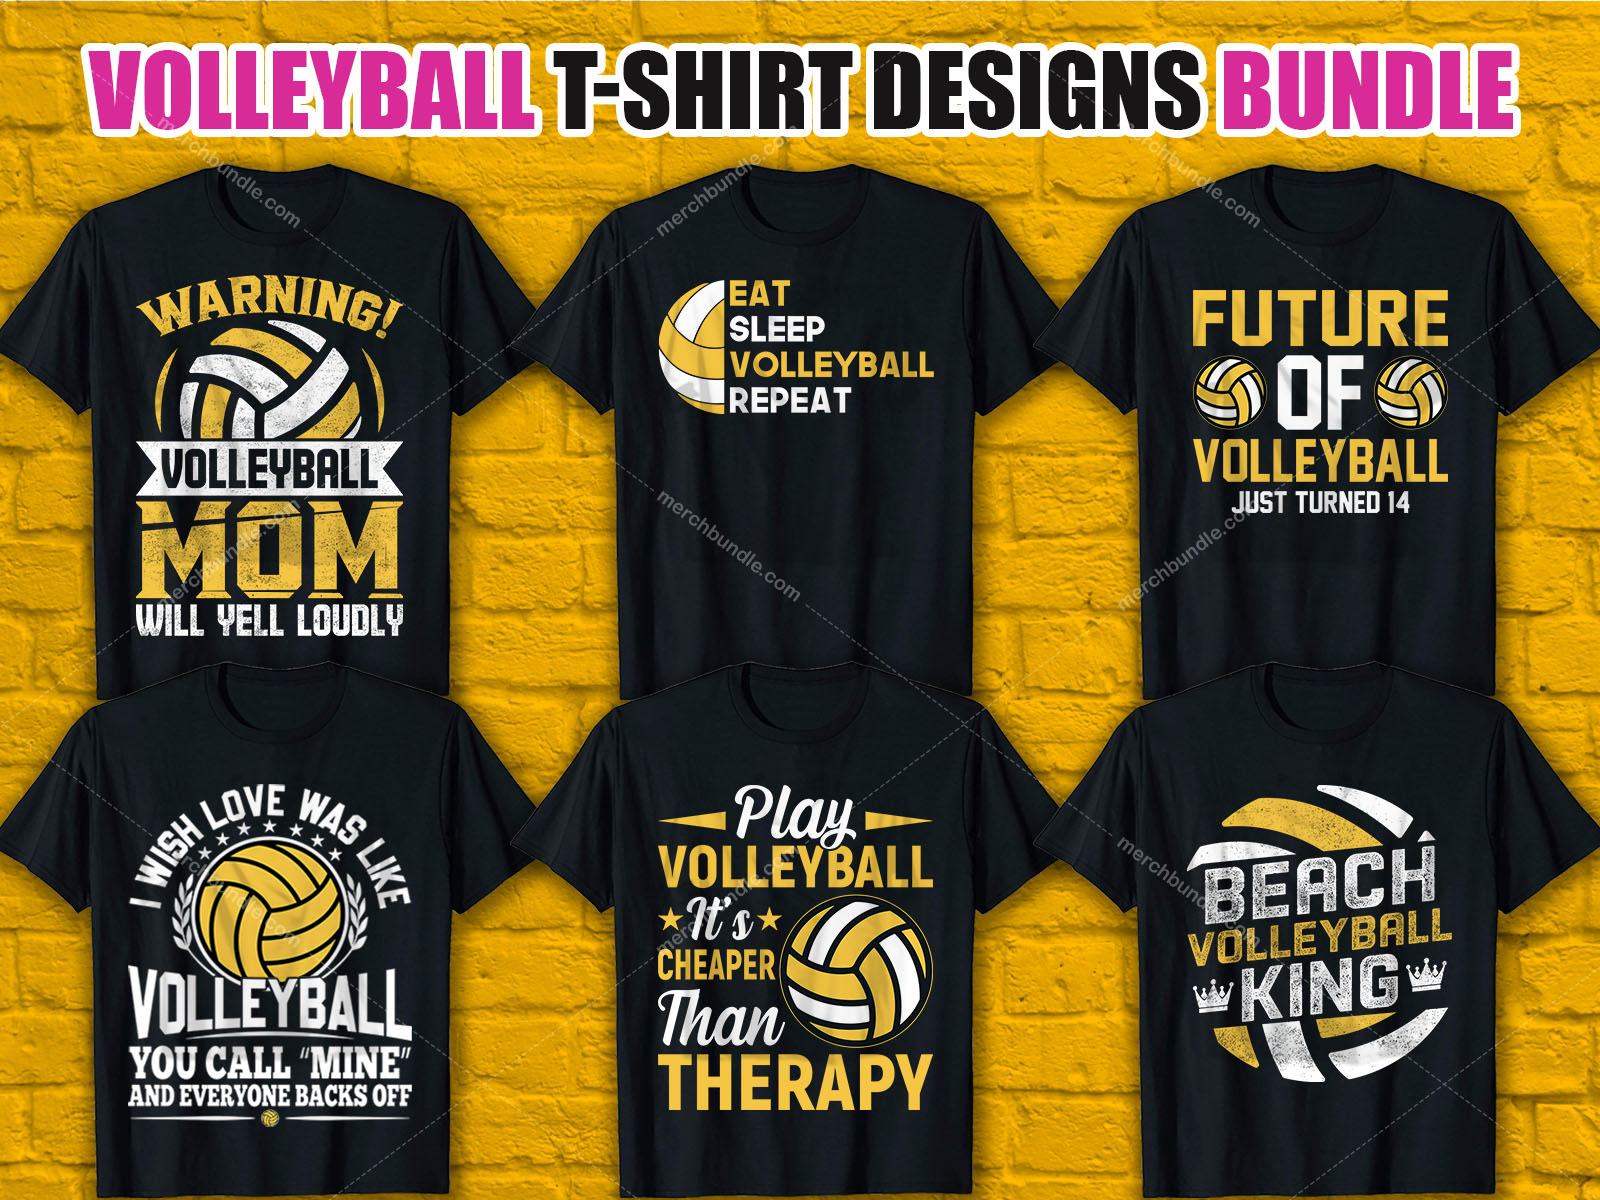 Volleyball T-Shirt Design Bundle - Volleyball shirt bundle